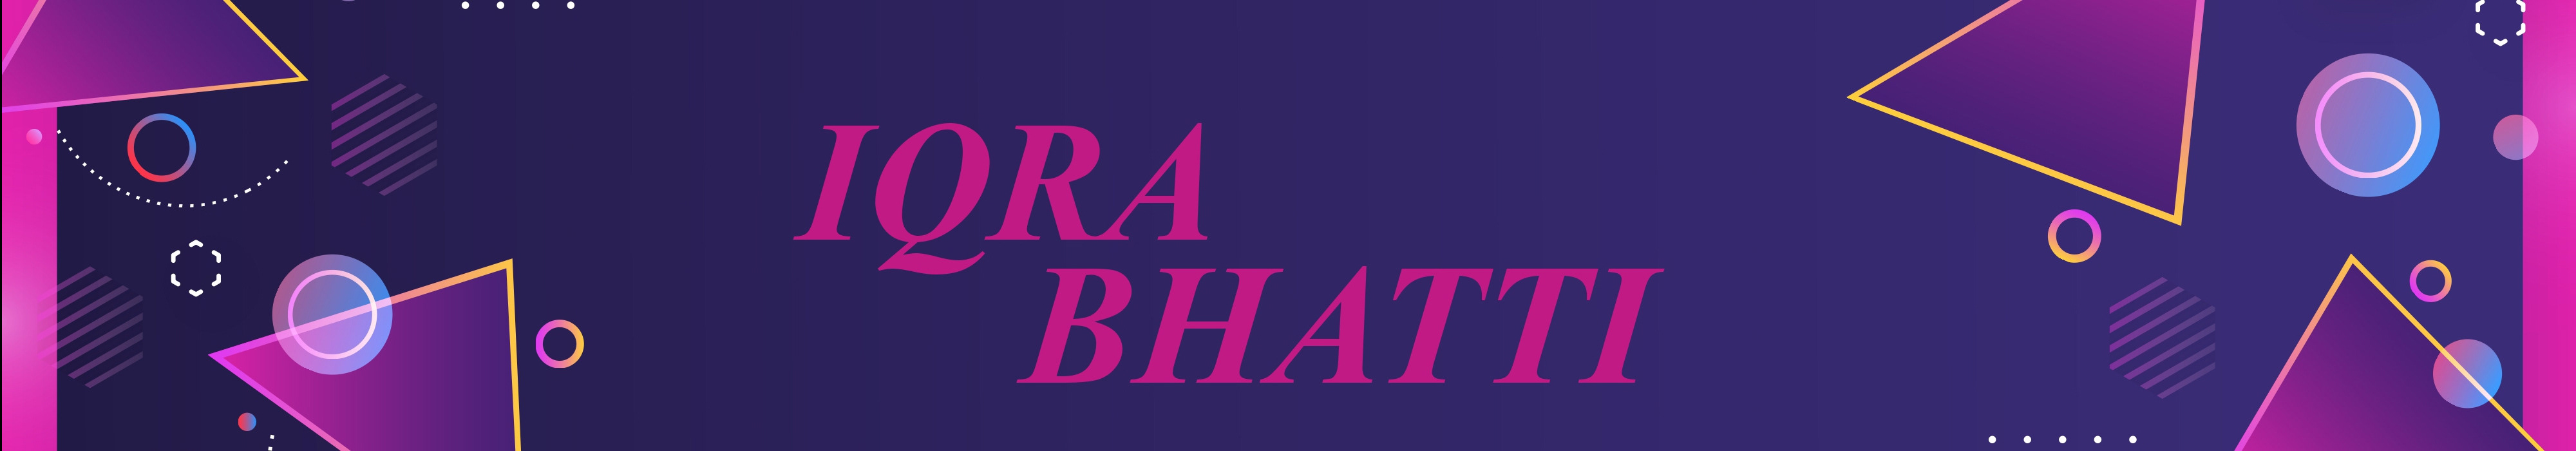 iqra bhatti's profile banner